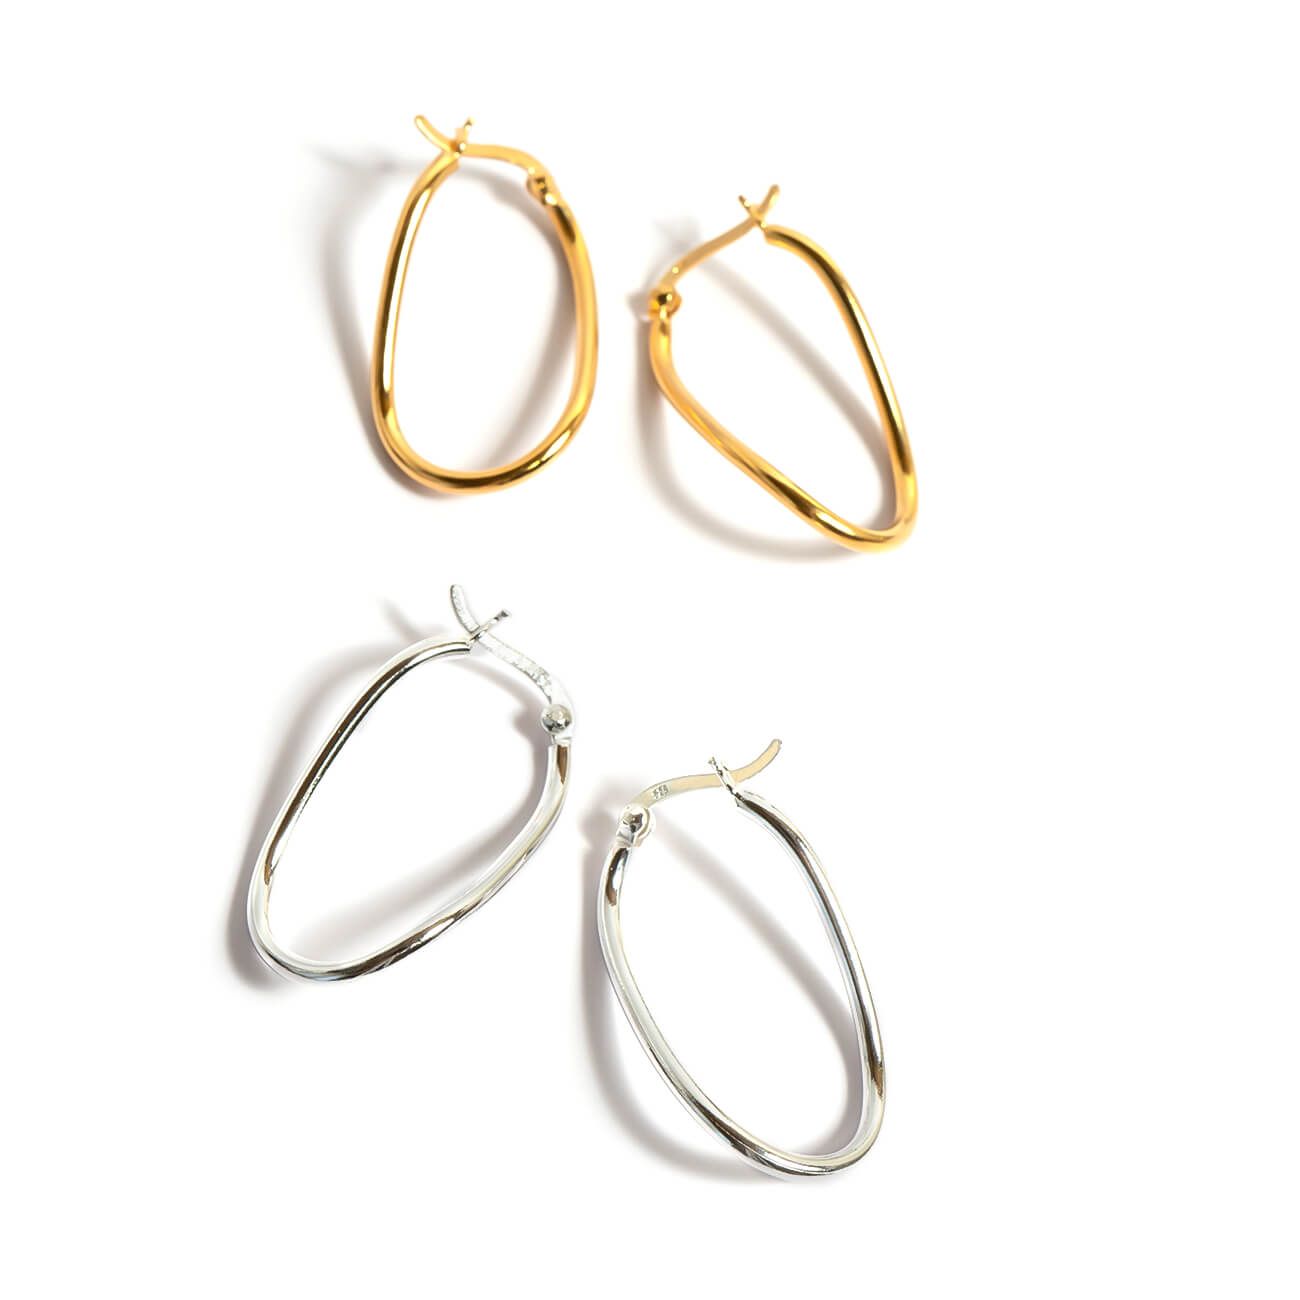 Silver925 Awrry Oval Hoop Earrings | MIMILO